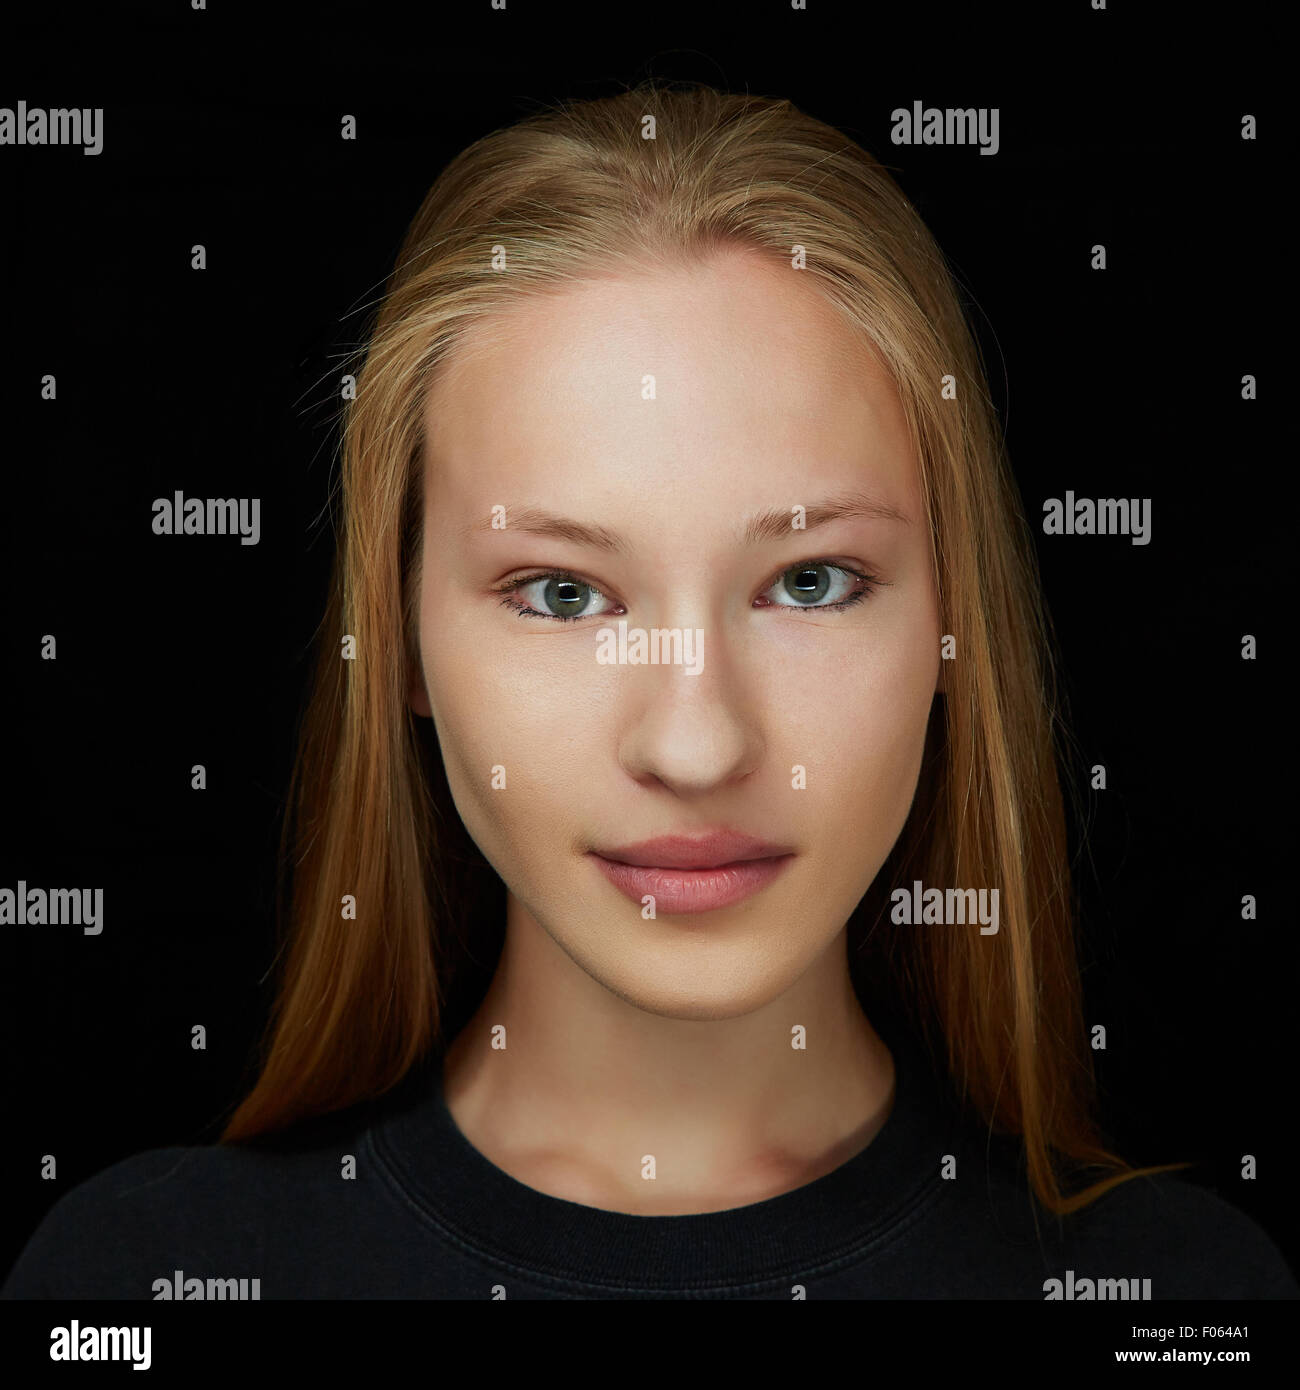 La faccia di un giovane attraente donna bionda in vista frontale su sfondo scuro Foto Stock